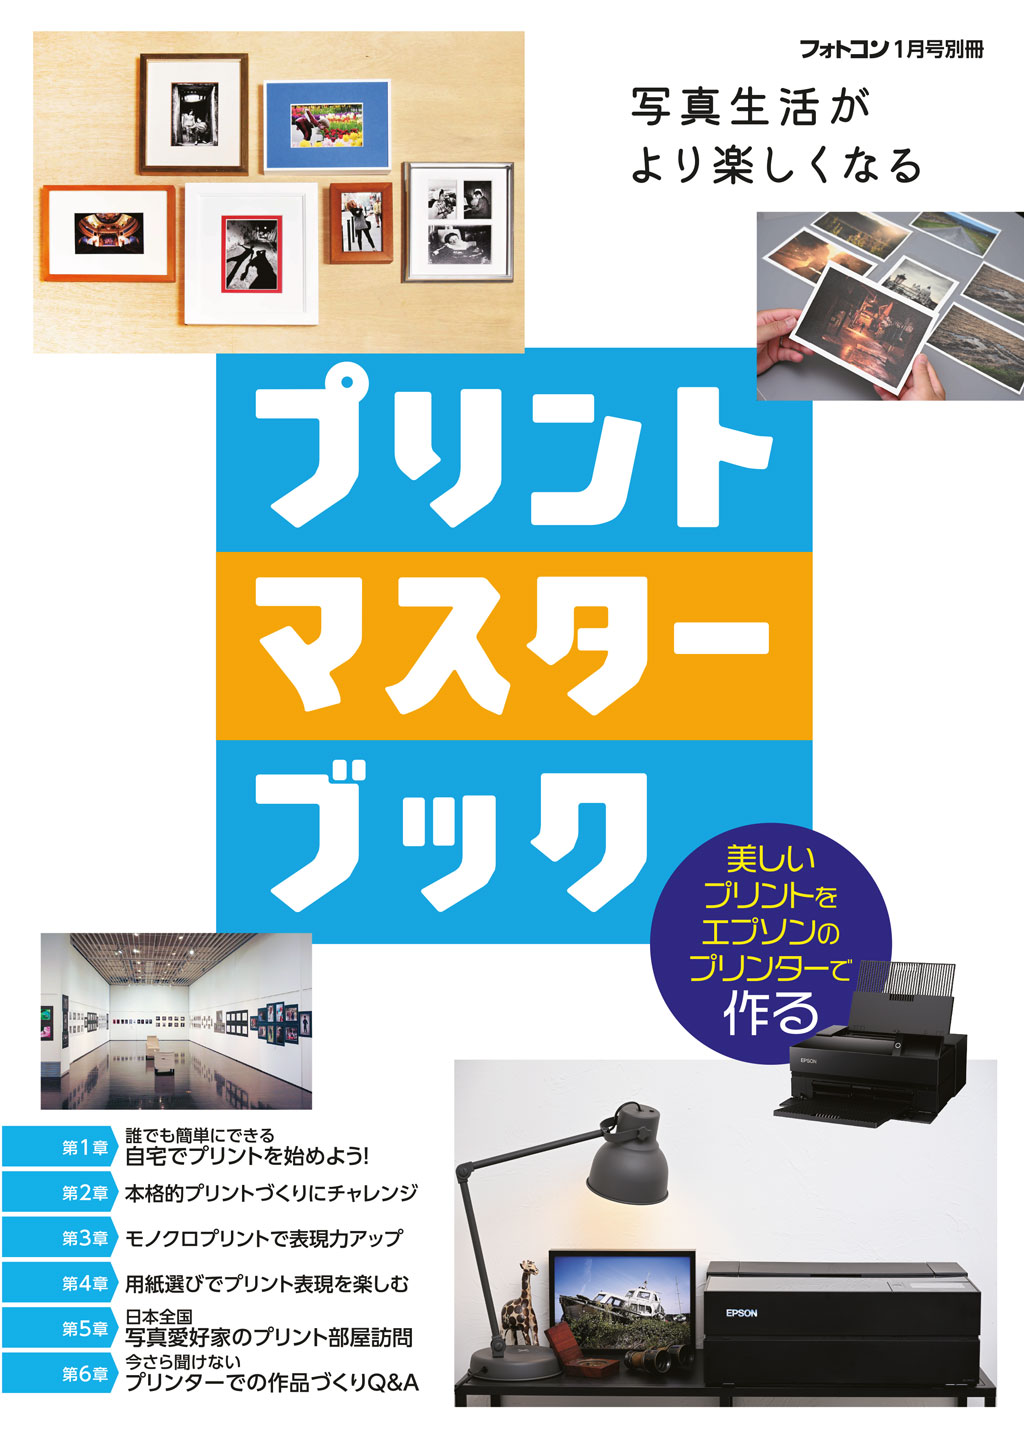 PCB23-01 printmasterbook-h1